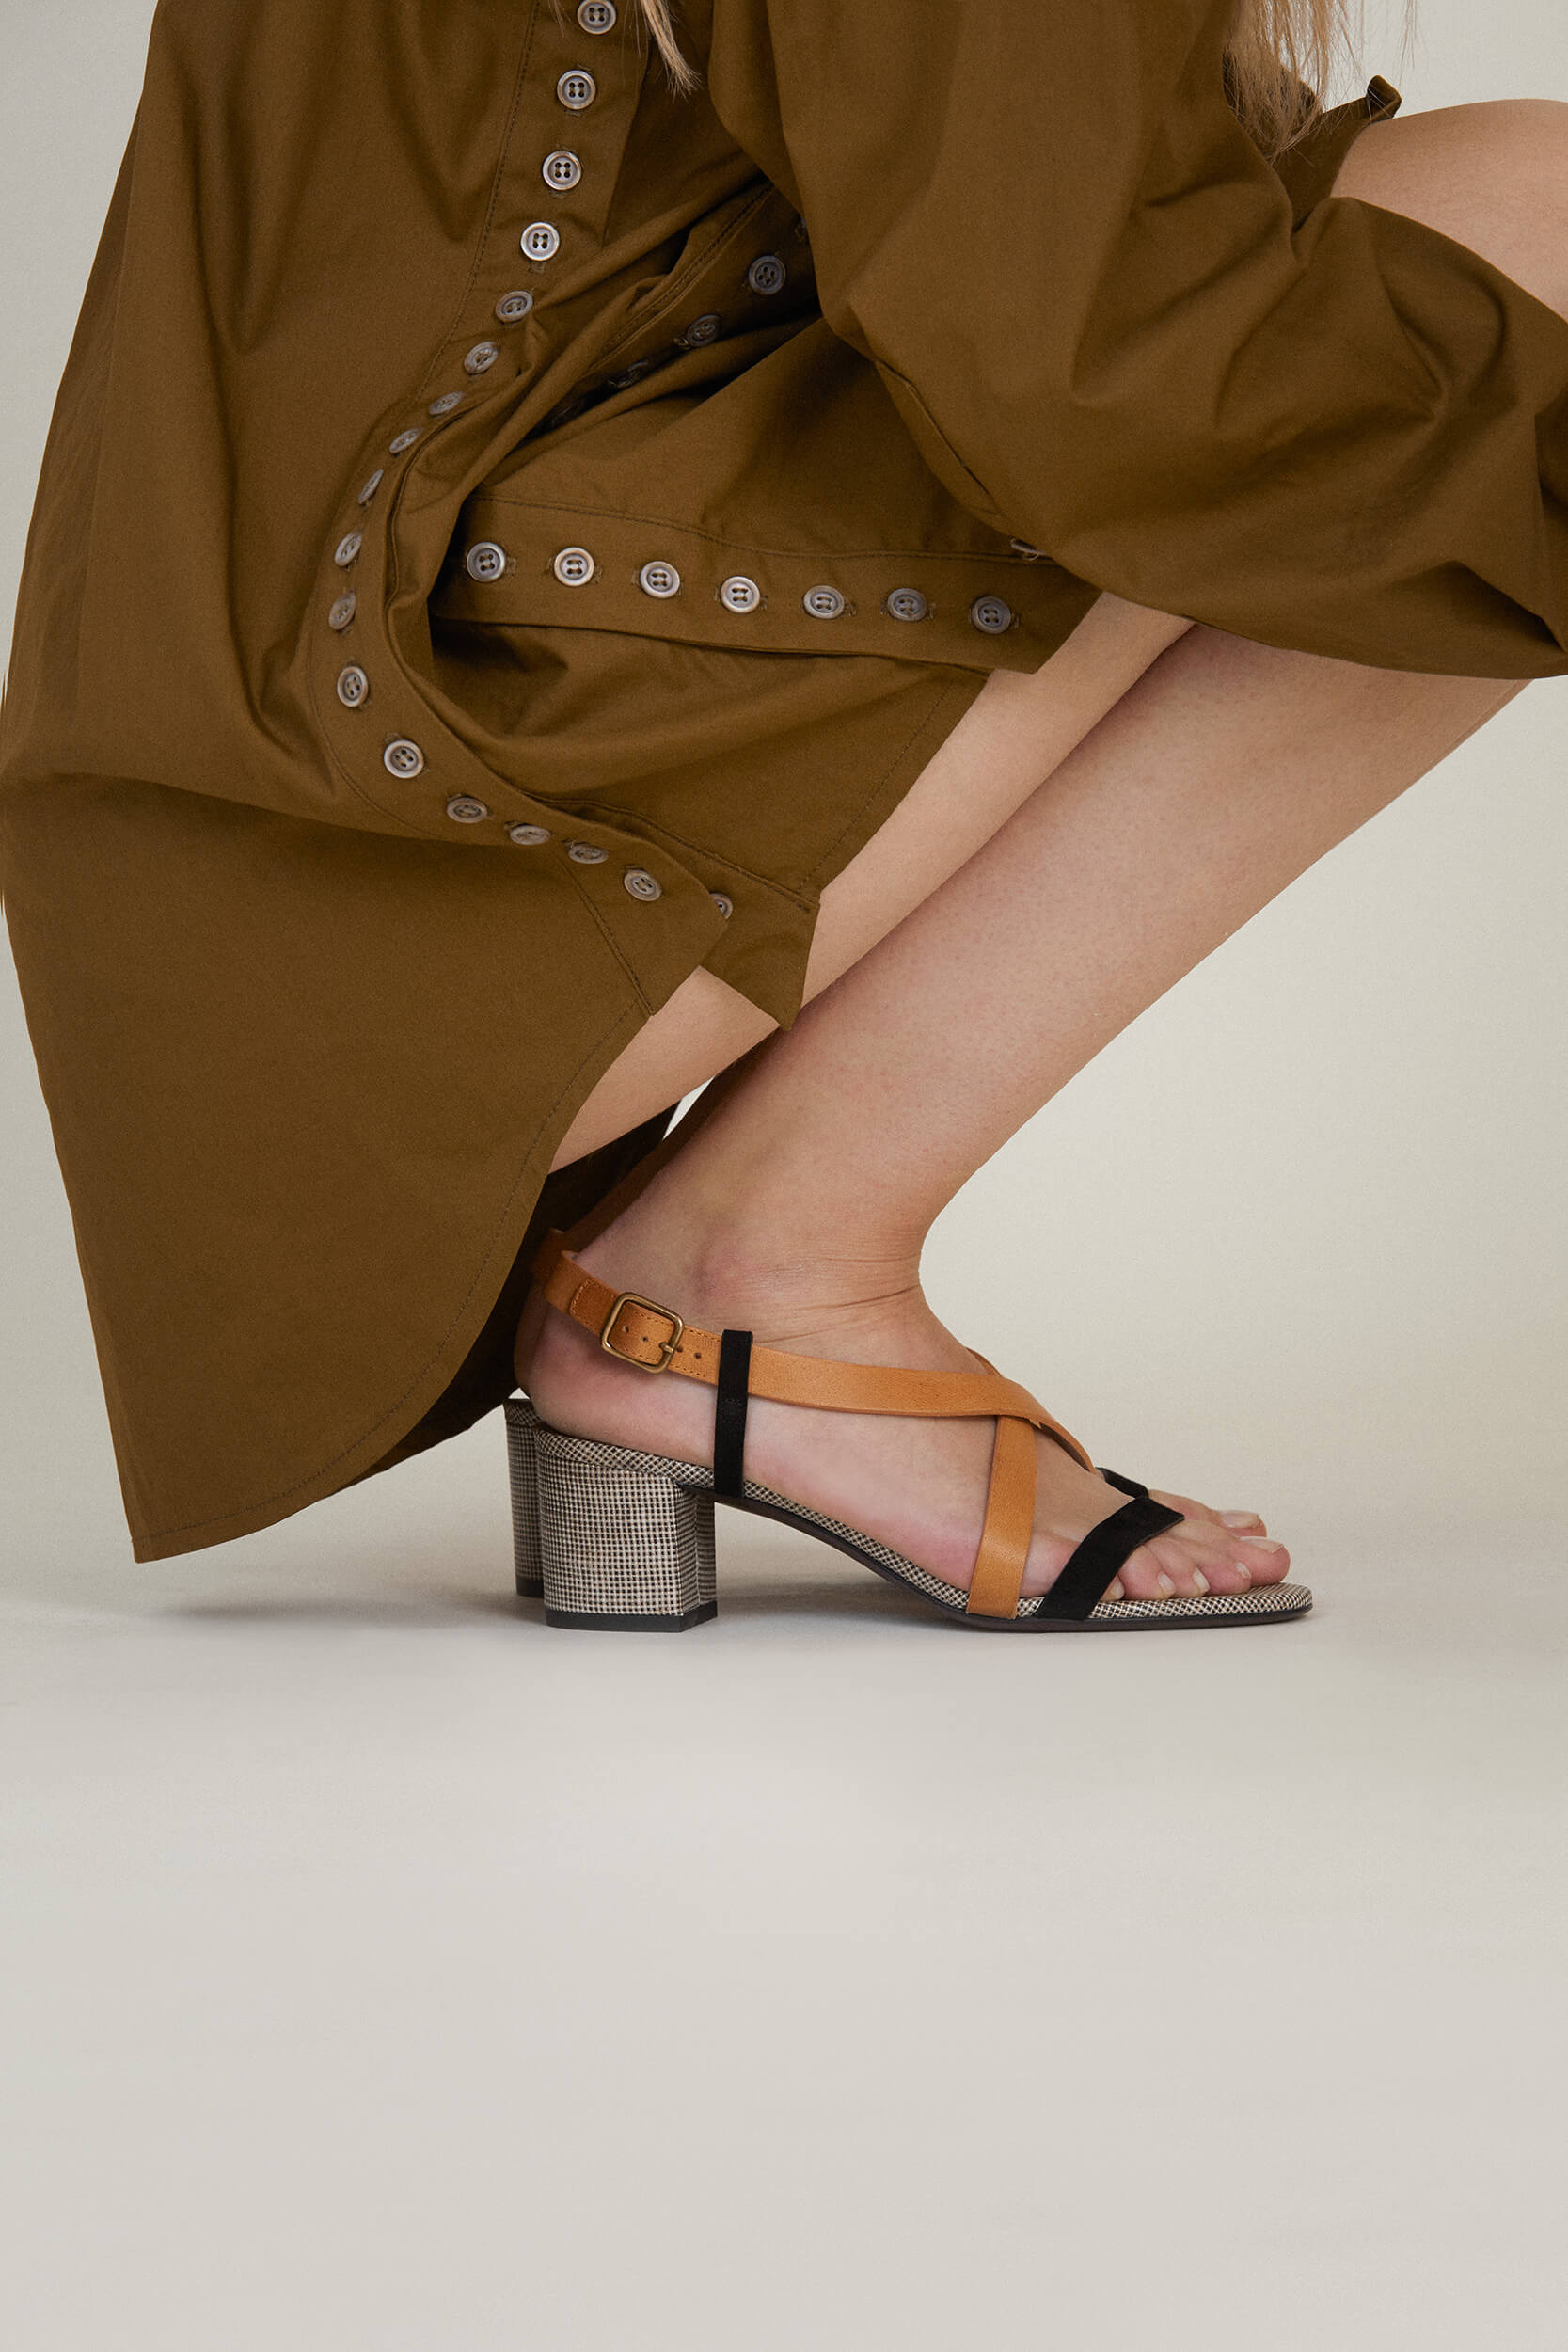 Photographie portée d'une sandale d'été à talon de 5,5cm. Tige en cuir de veau camel, chèvre velours noir et toile de lin. Fabrication italienne. 